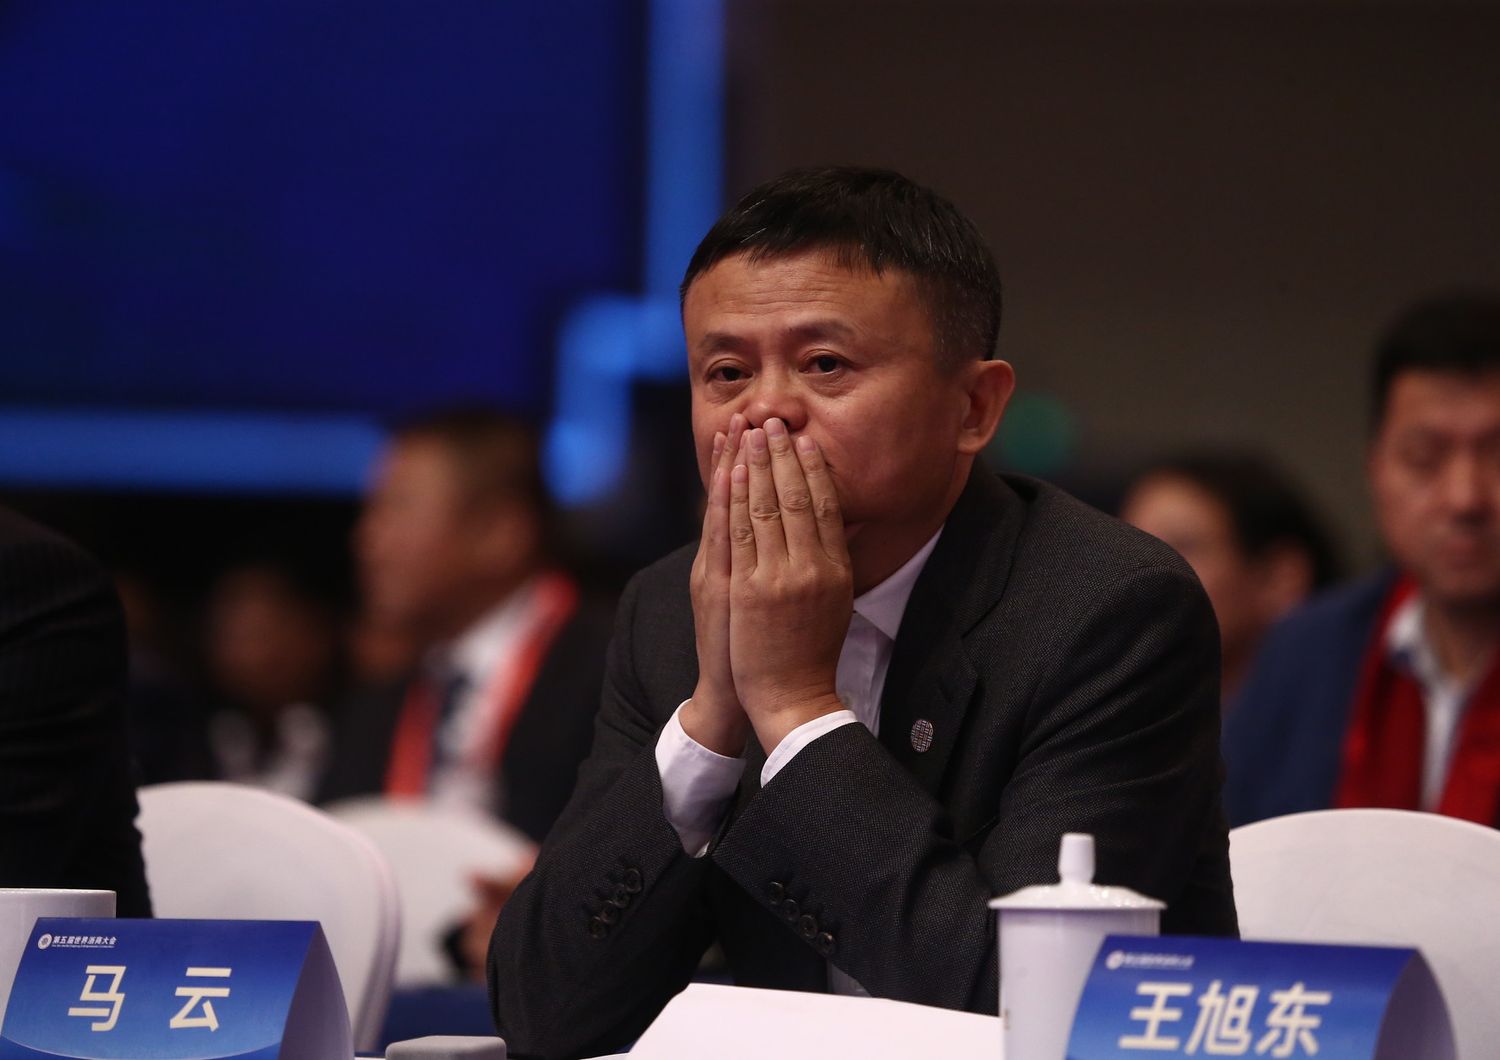 Jack Ma, cofounder of Alibaba